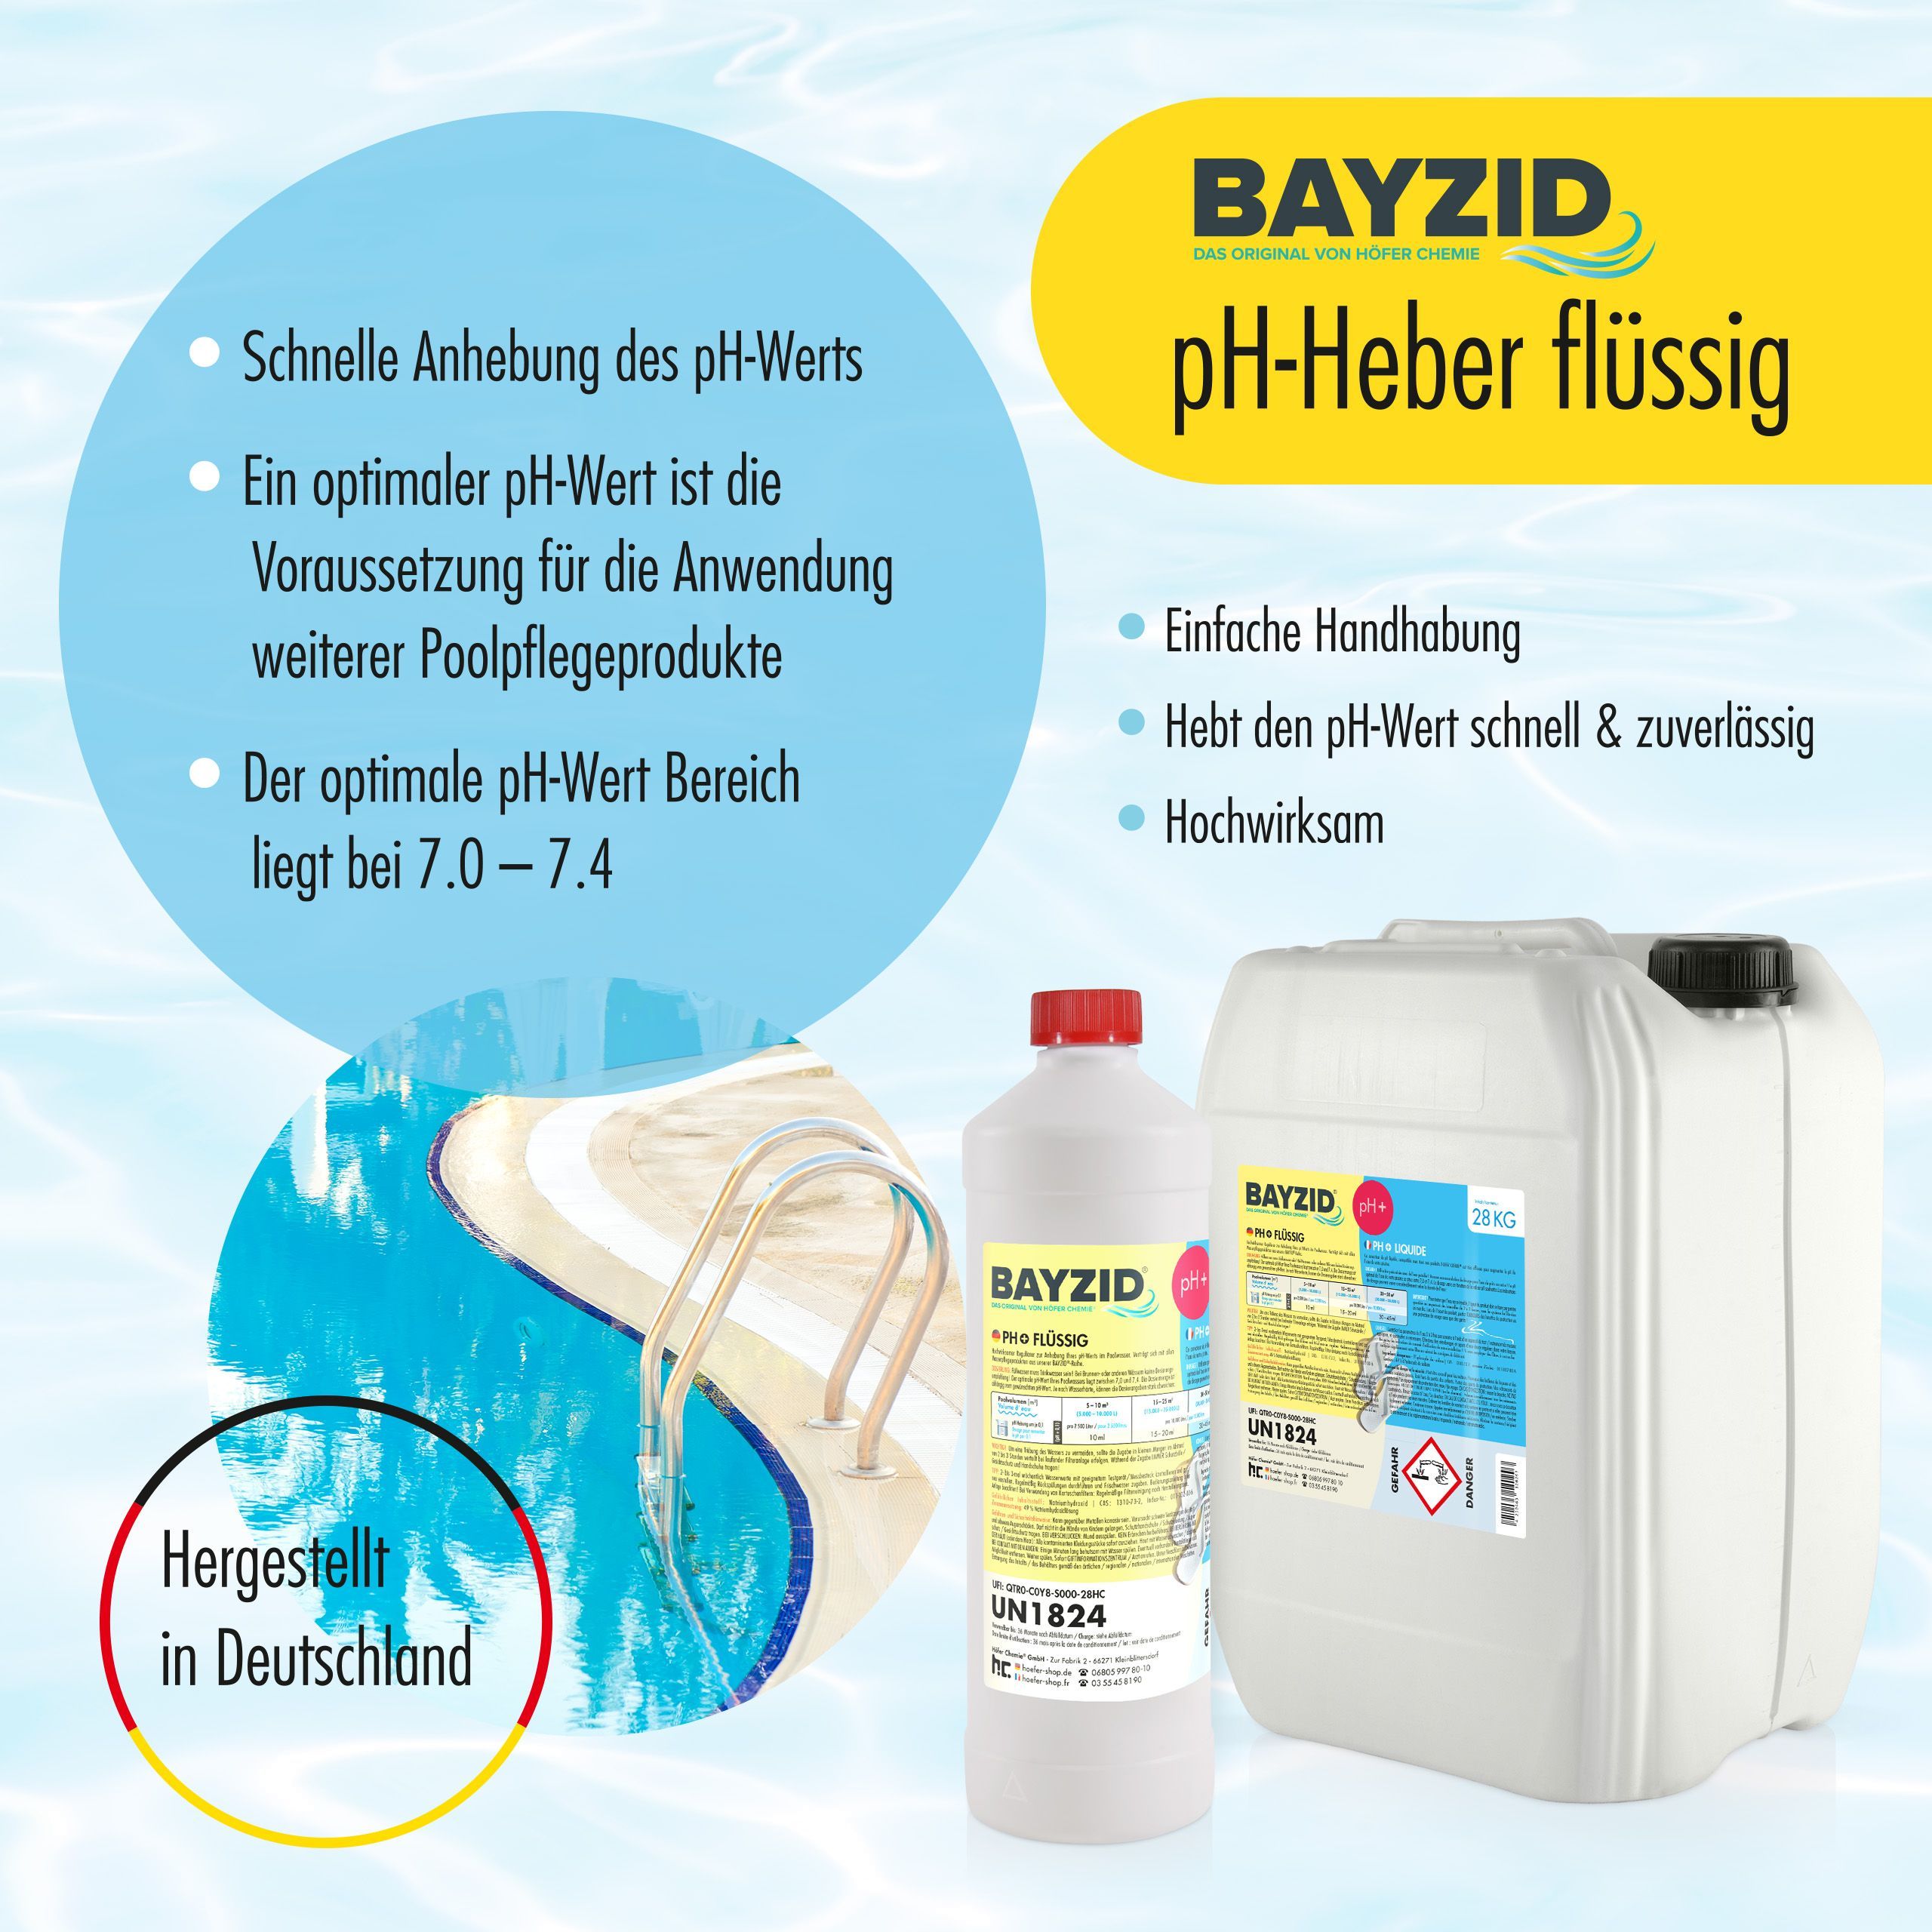 14 kg BAYZID® pH Plus liquide